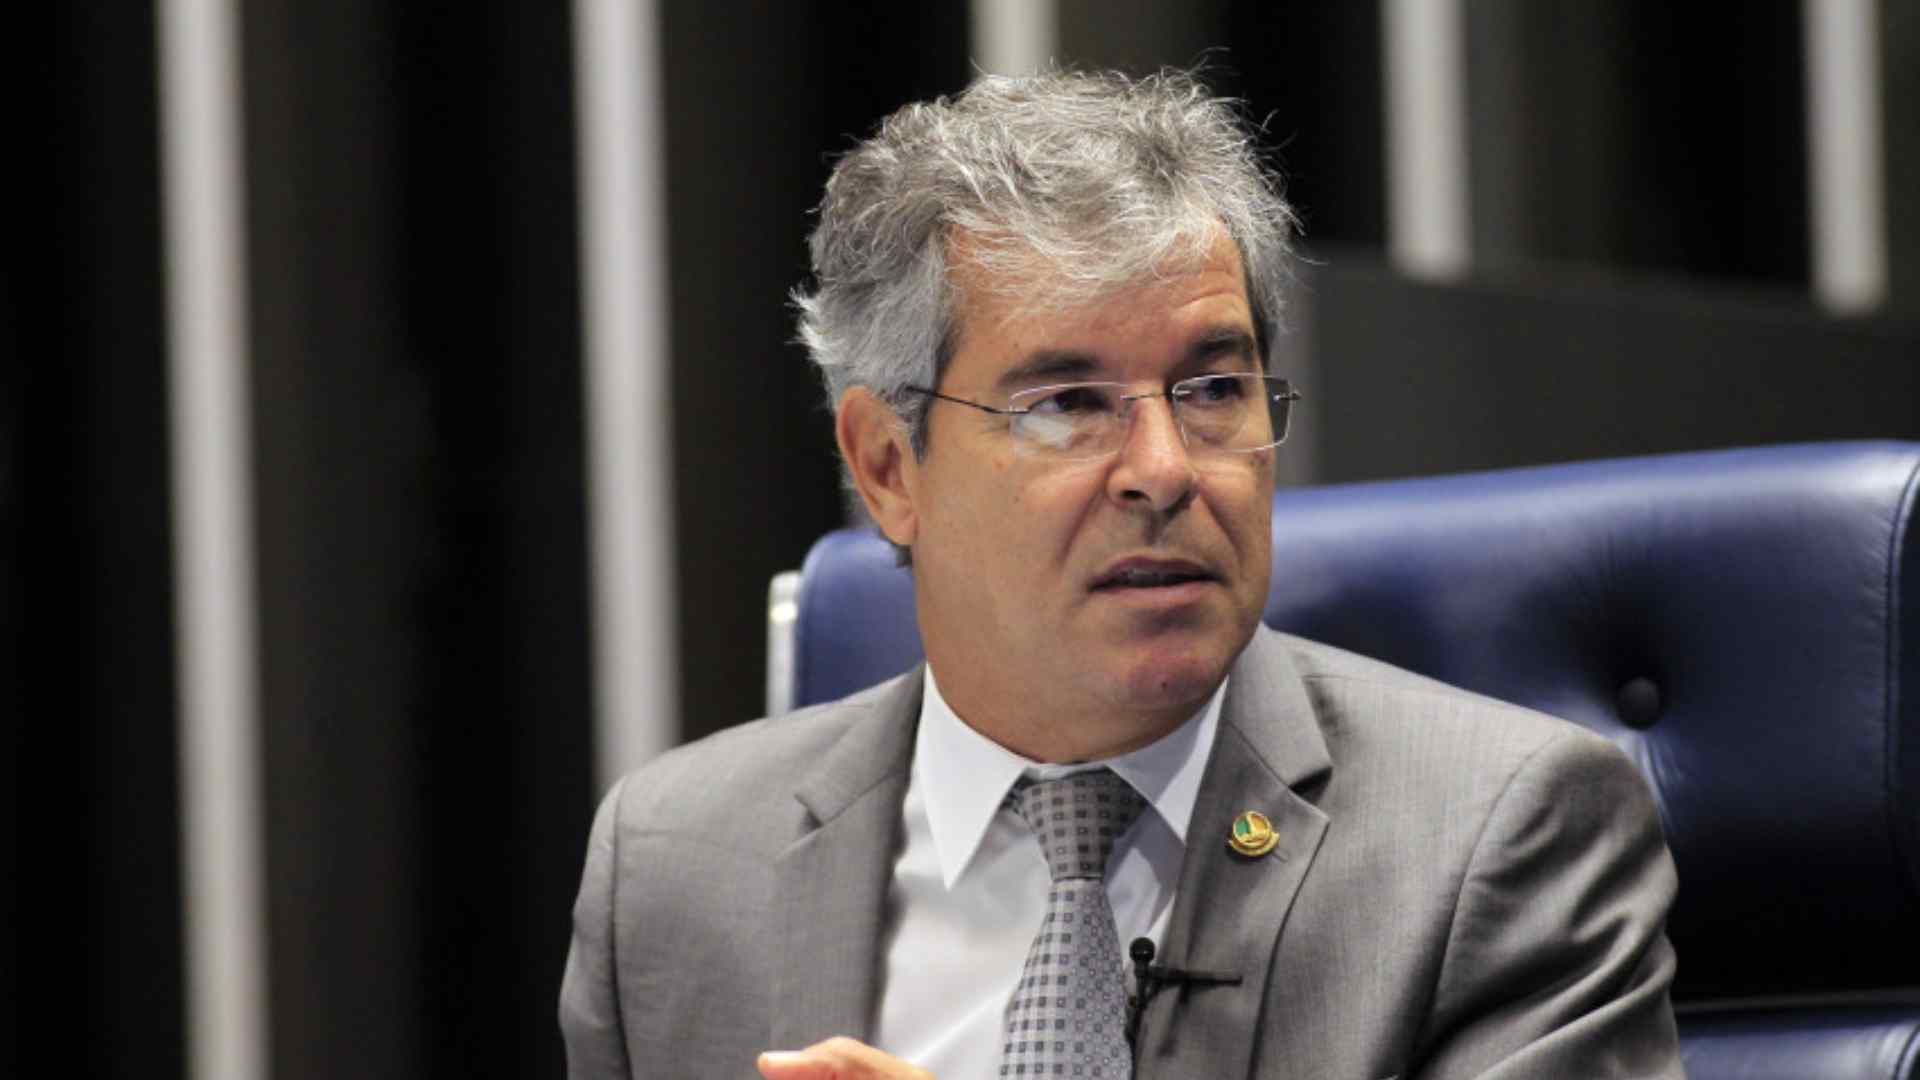 Justiça anula nomeação de Jorge Viana na Apex-Brasil por não saber falar inglês